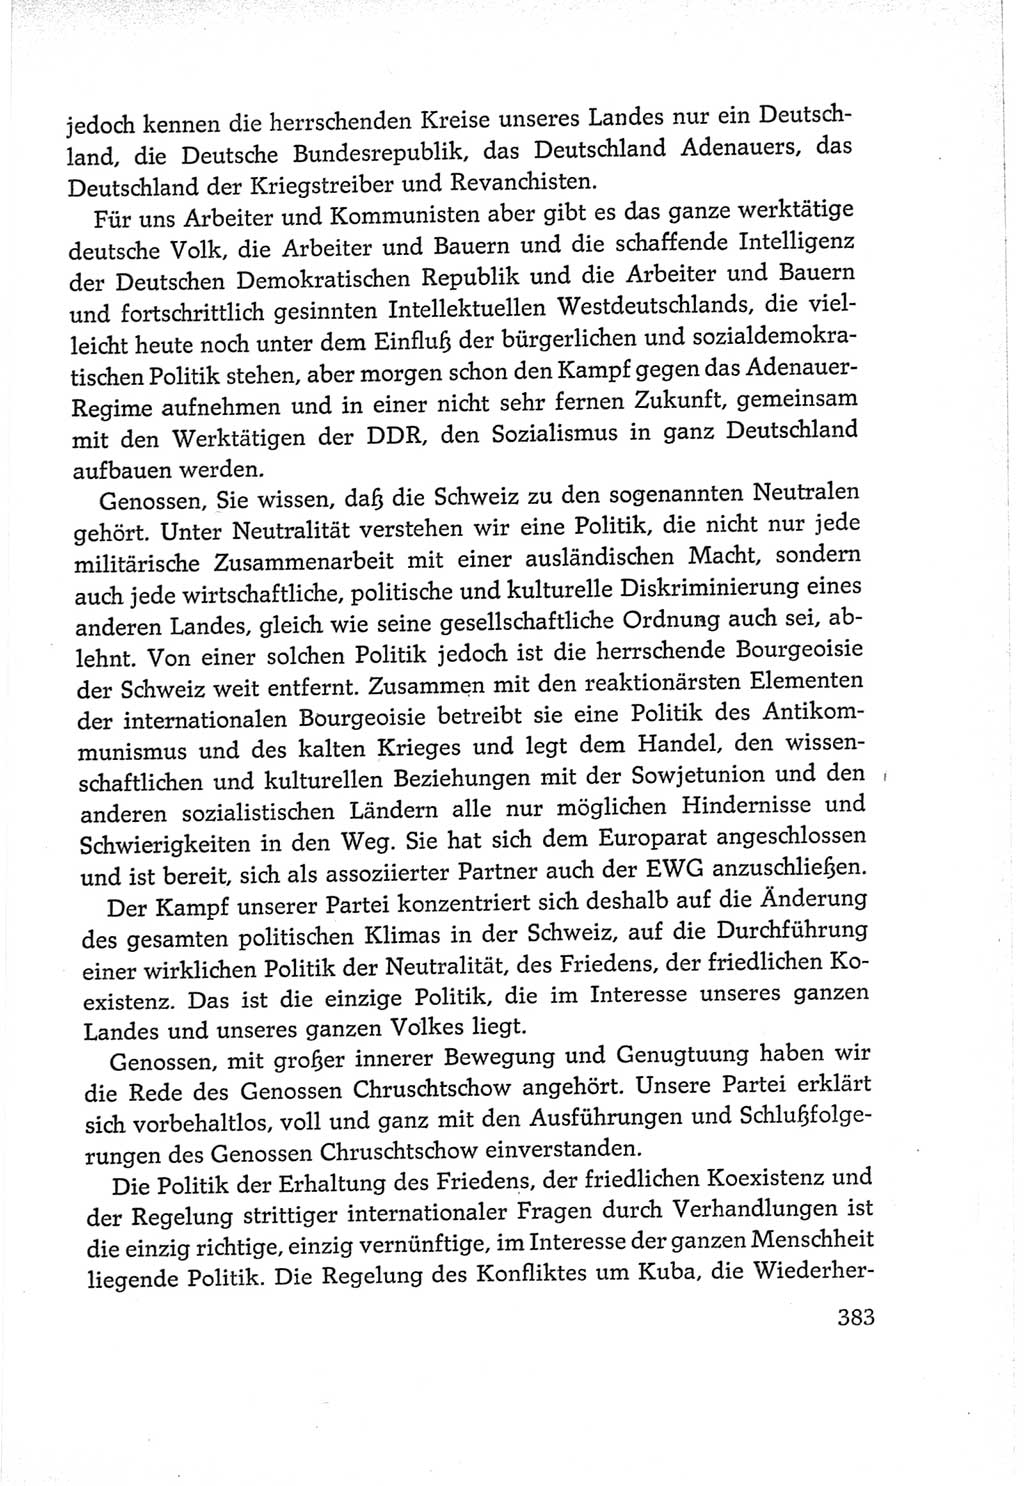 Protokoll der Verhandlungen des Ⅵ. Parteitages der Sozialistischen Einheitspartei Deutschlands (SED) [Deutsche Demokratische Republik (DDR)] 1963, Band Ⅱ, Seite 383 (Prot. Verh. Ⅵ. PT SED DDR 1963, Bd. Ⅱ, S. 383)